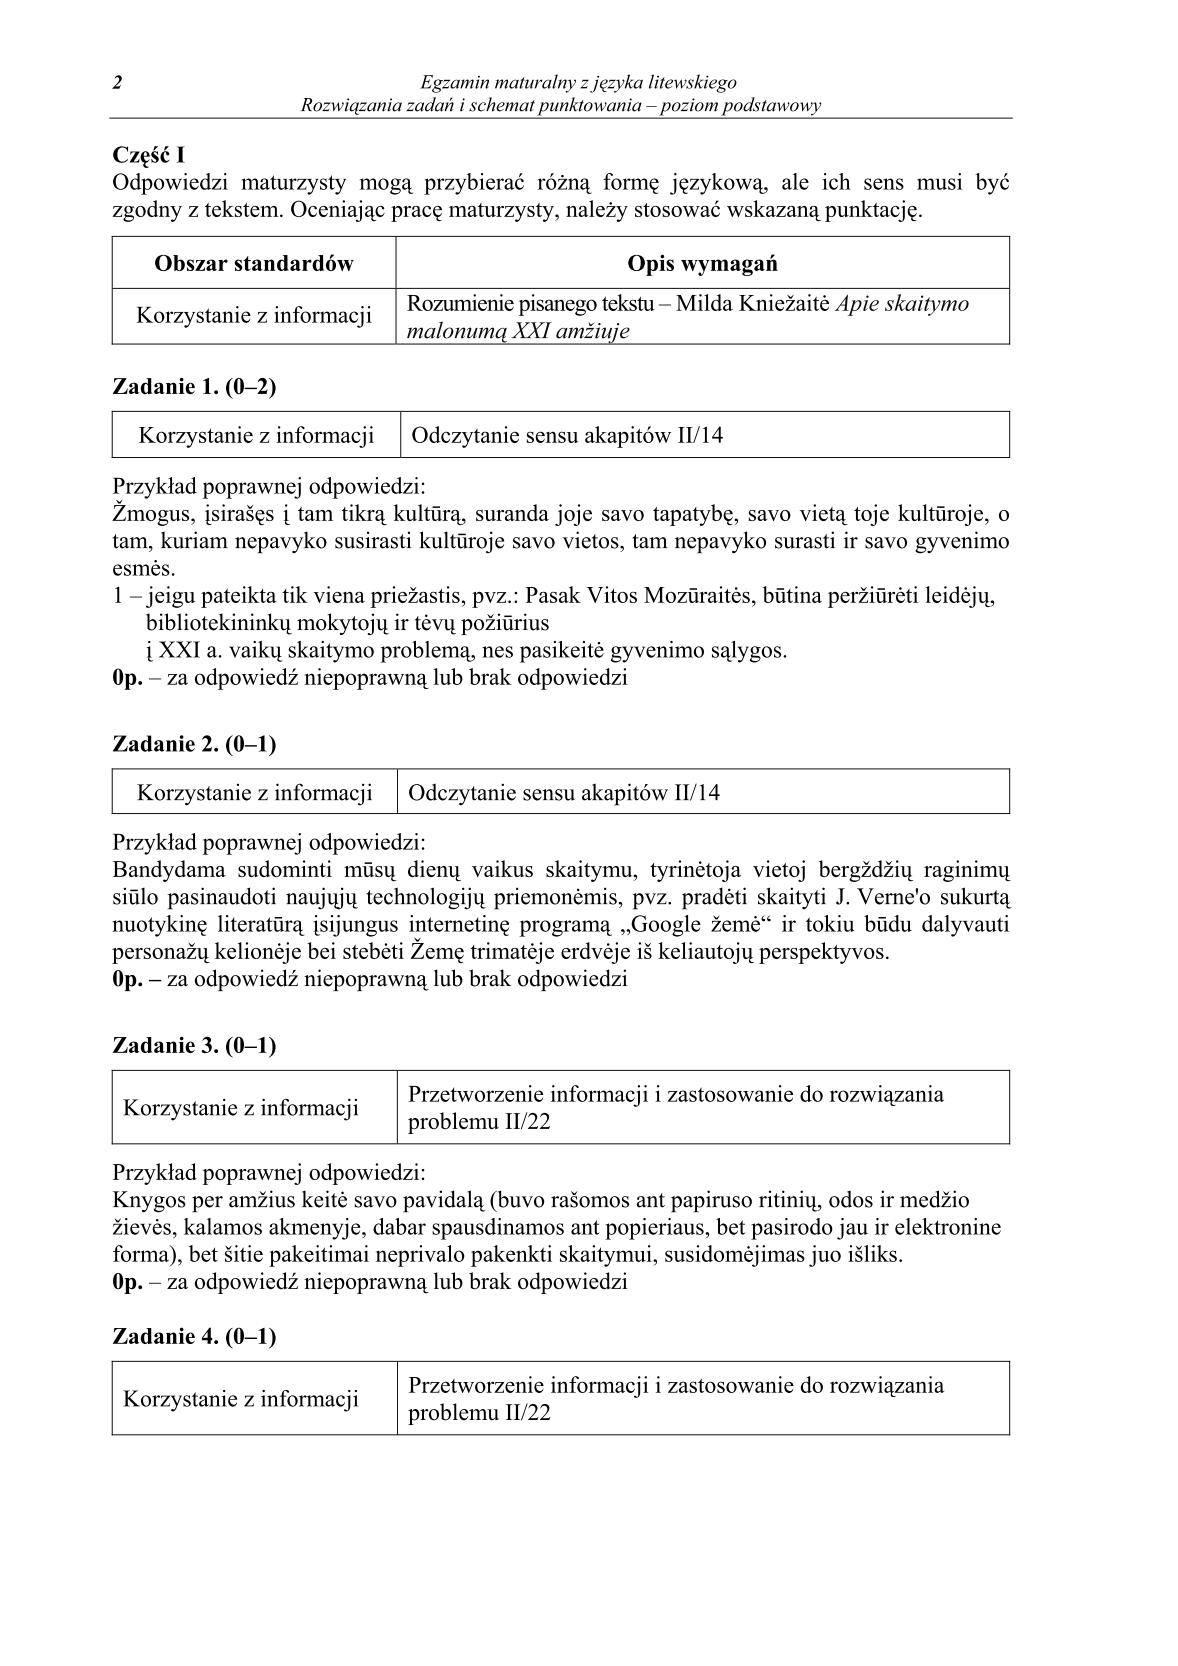 odpowiedzi-jezyk-litewski-poziom-podstawowy-matura-2014-str.2